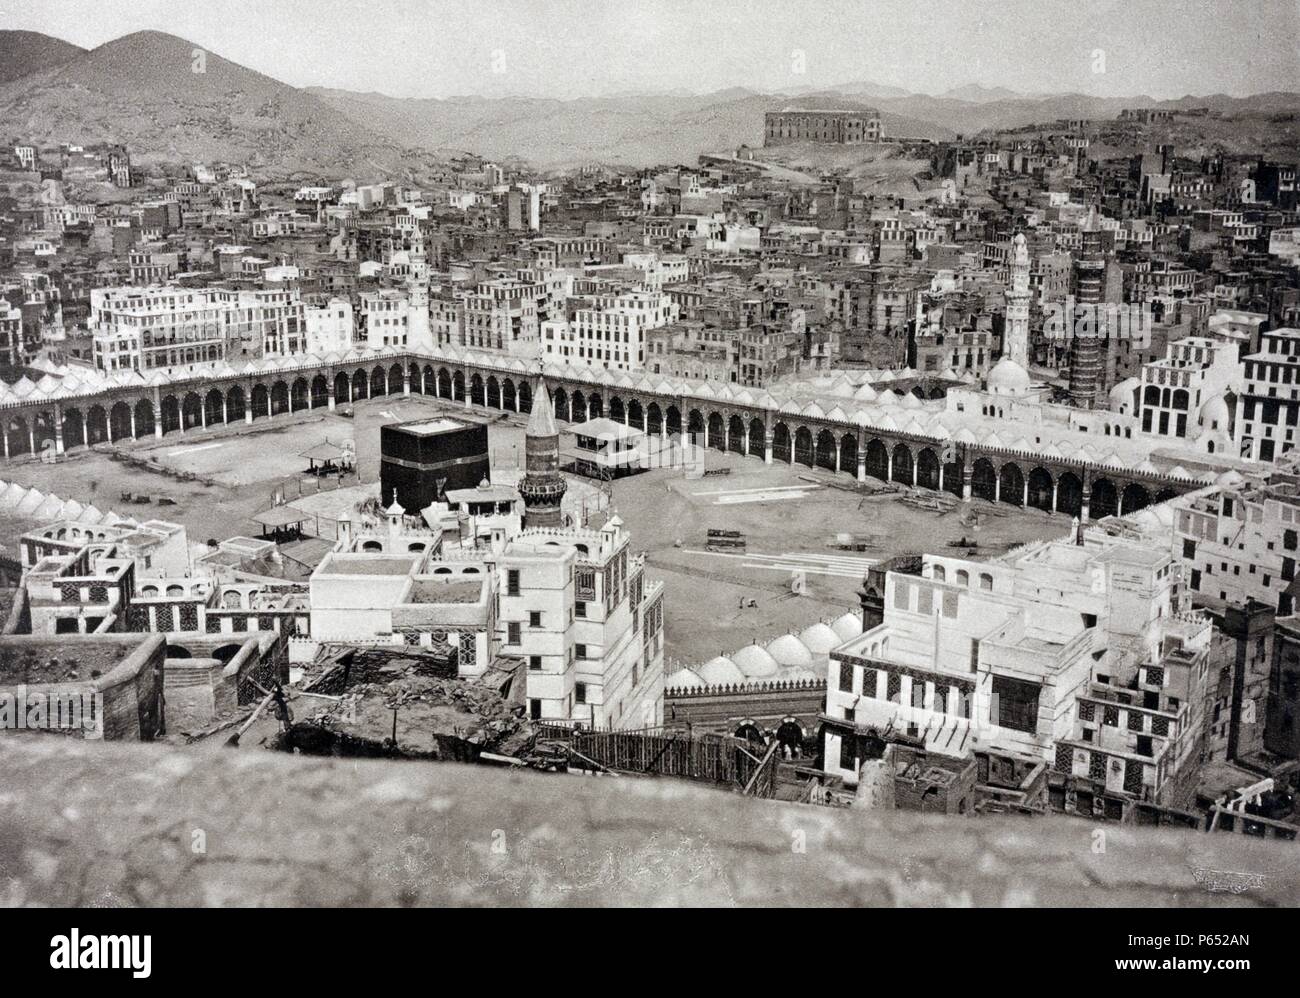 Die Große Moschee in Mekka, Saudi-Arabien. Geburtsort von Muhammad und ein Ort der ersten Mohammeds Offenbarung des Koran, Mekka ist als das heiligste Stadt in der Religion des Islam Stockfoto